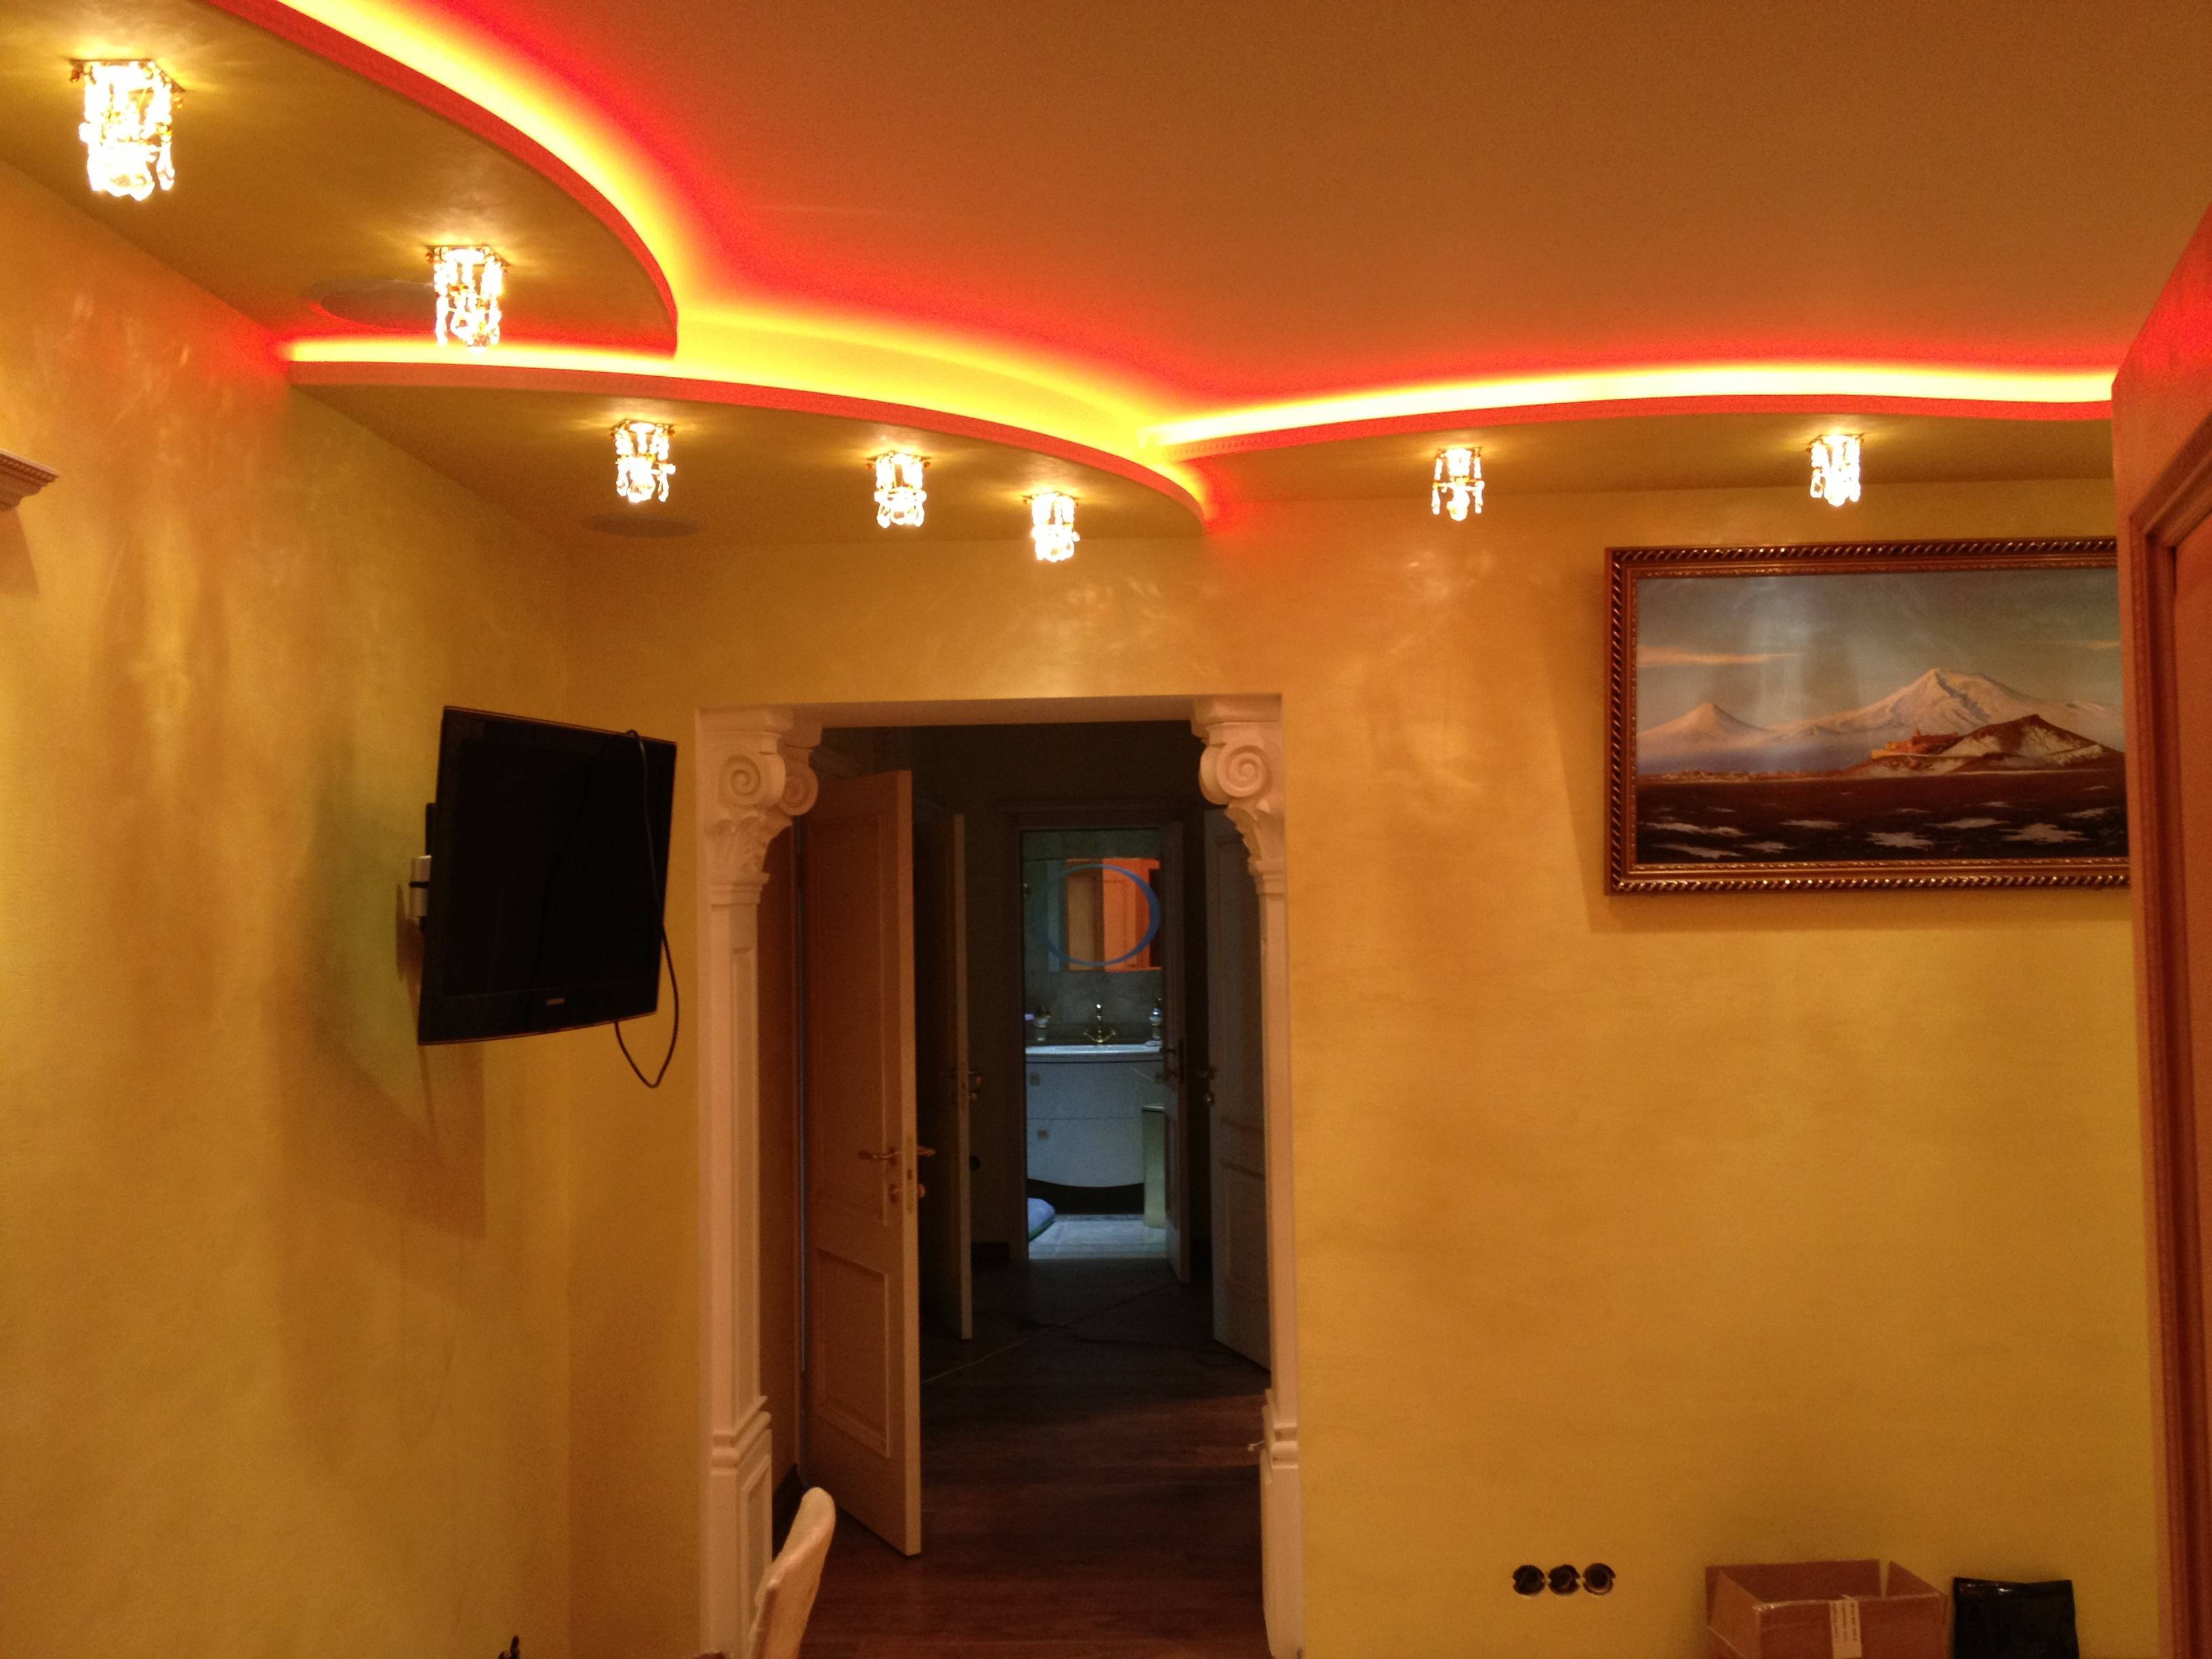 Подсветка потолка светодиодной лентой, установка светодиодной ленты под натяжной потолок